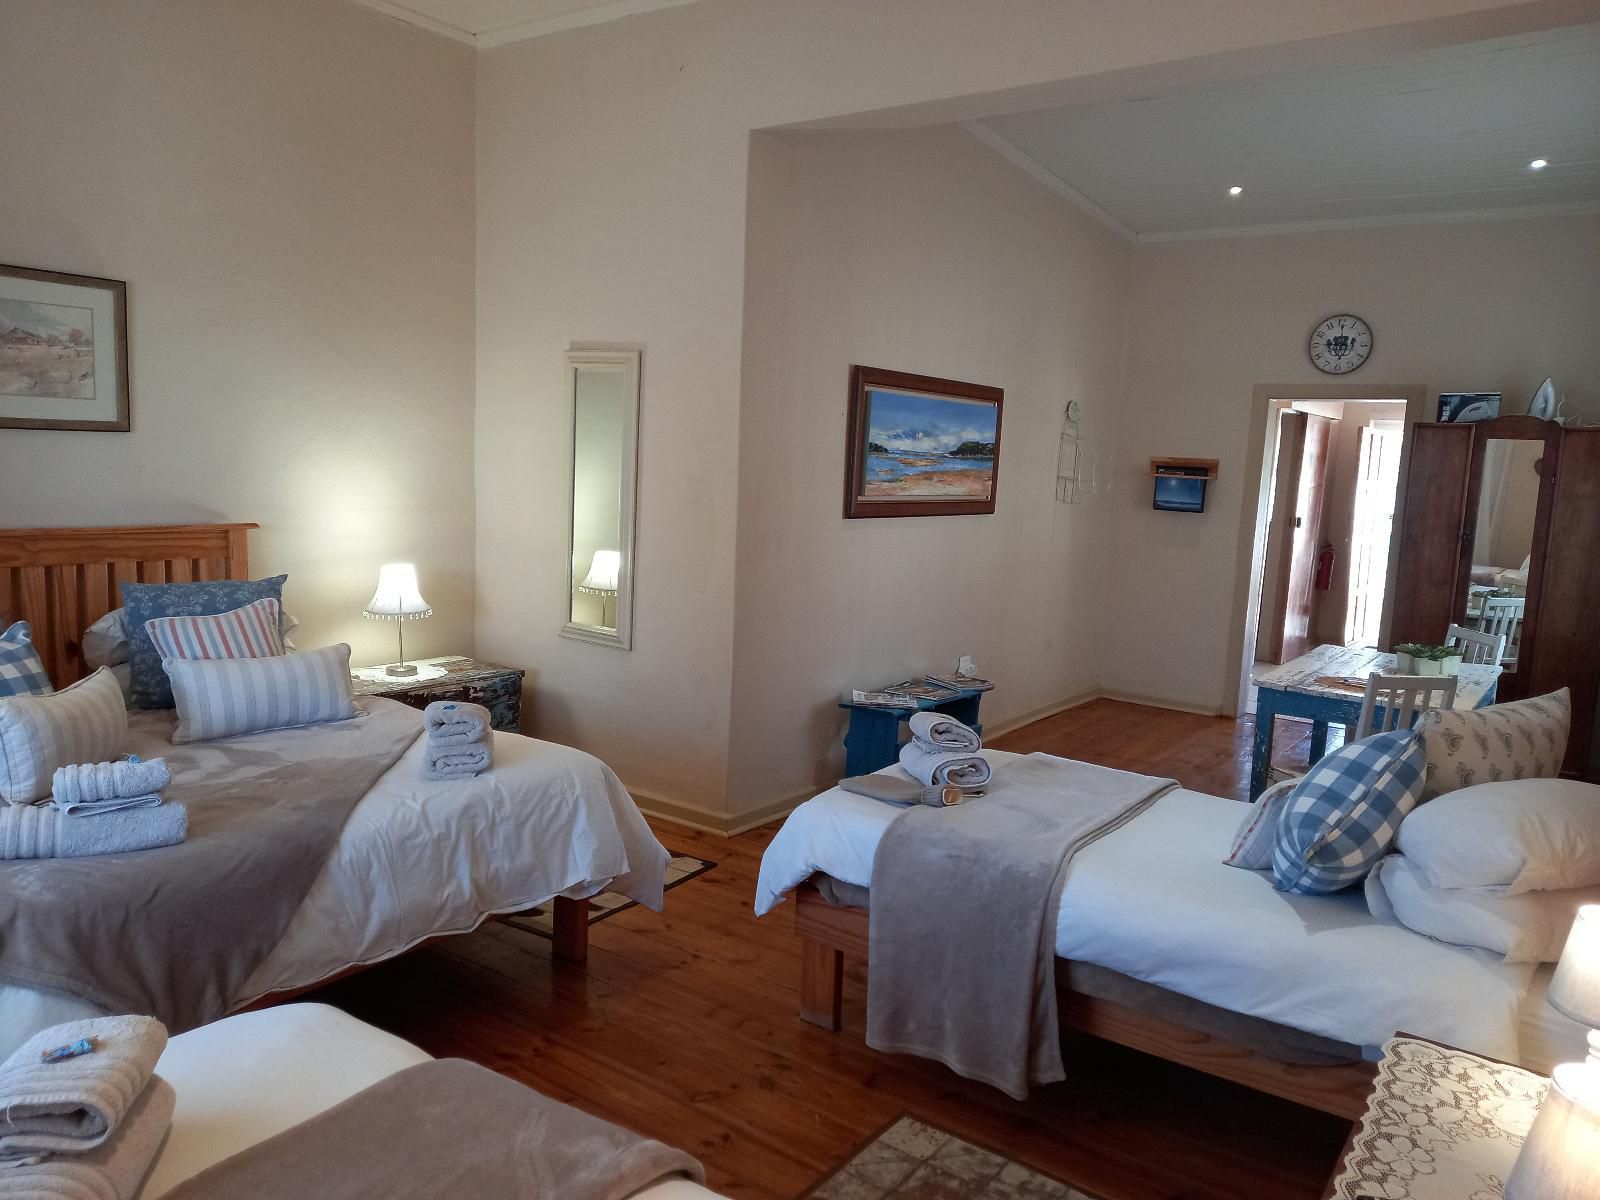 Karoorus Graaff Reinet Eastern Cape South Africa Bedroom